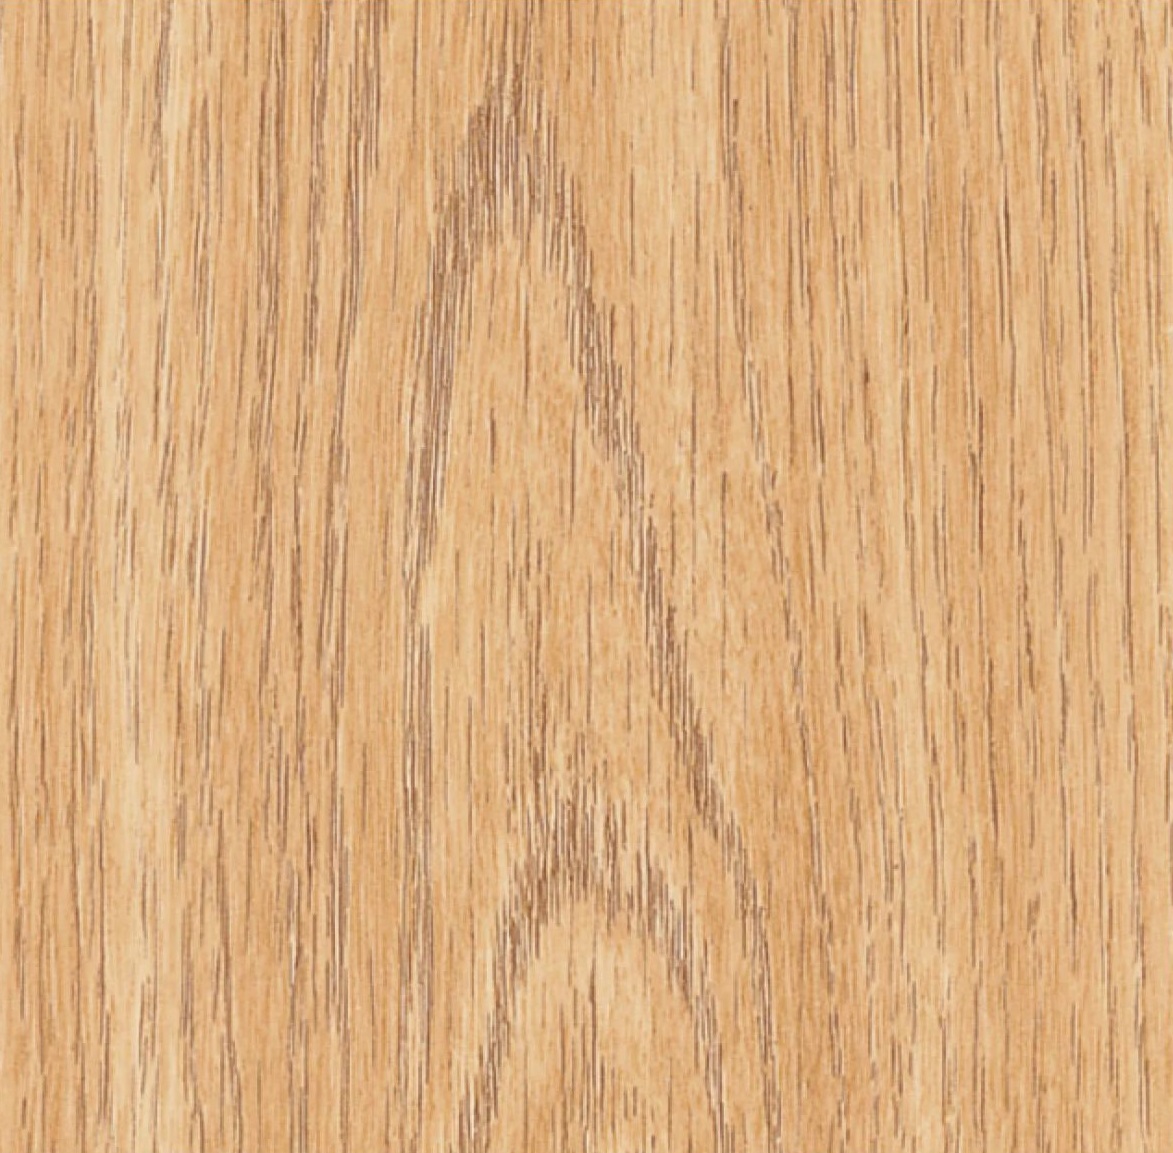 lightoak woodgrain